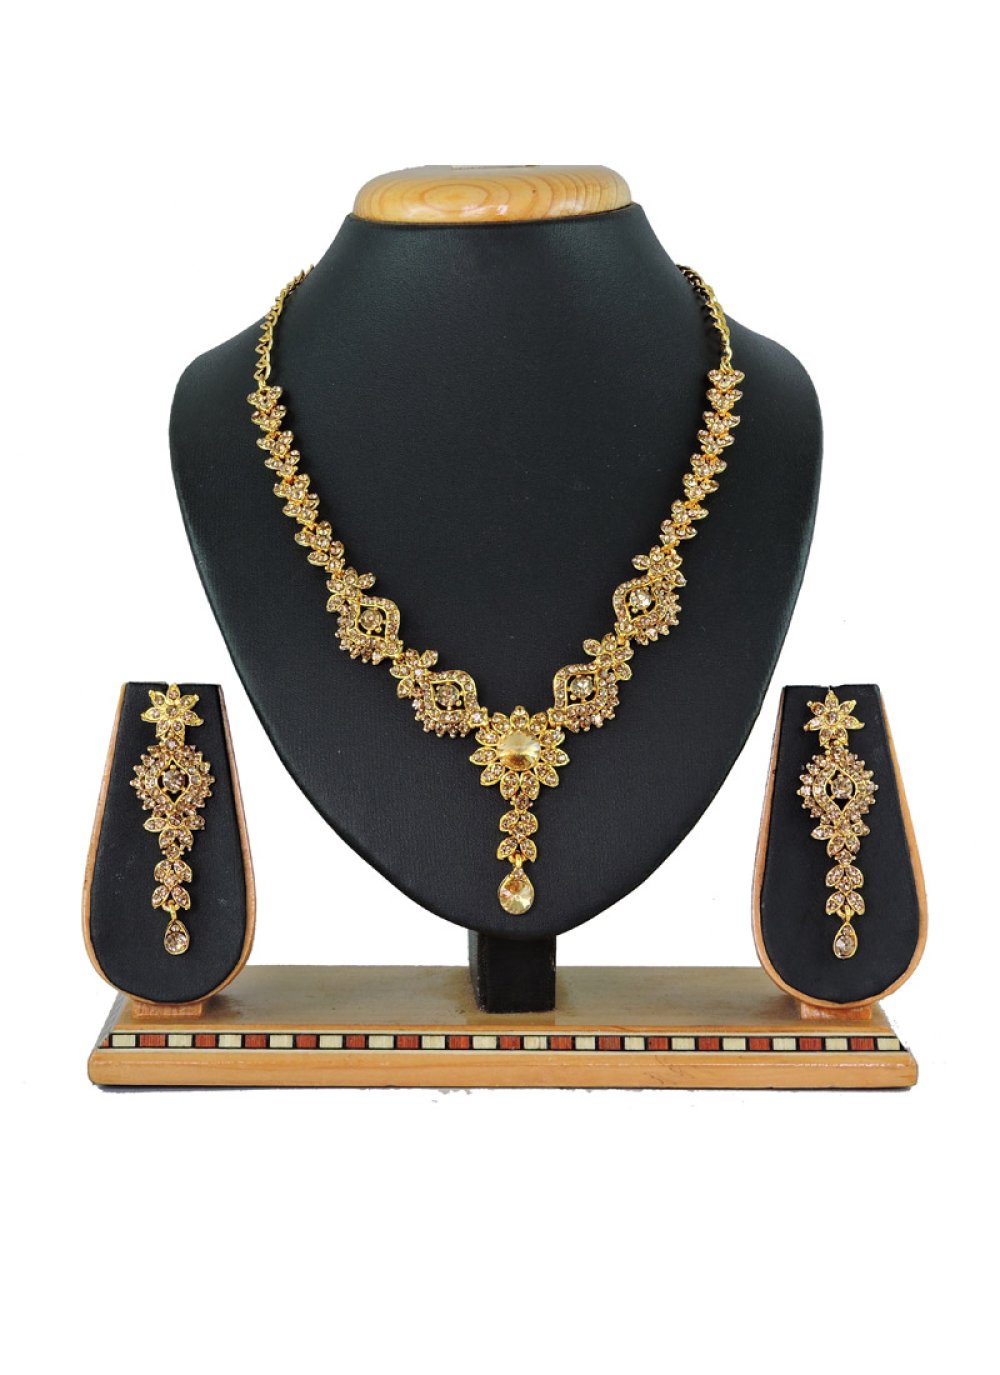 Sumptuous Stone Work Gold Rodium Polish Necklace Set